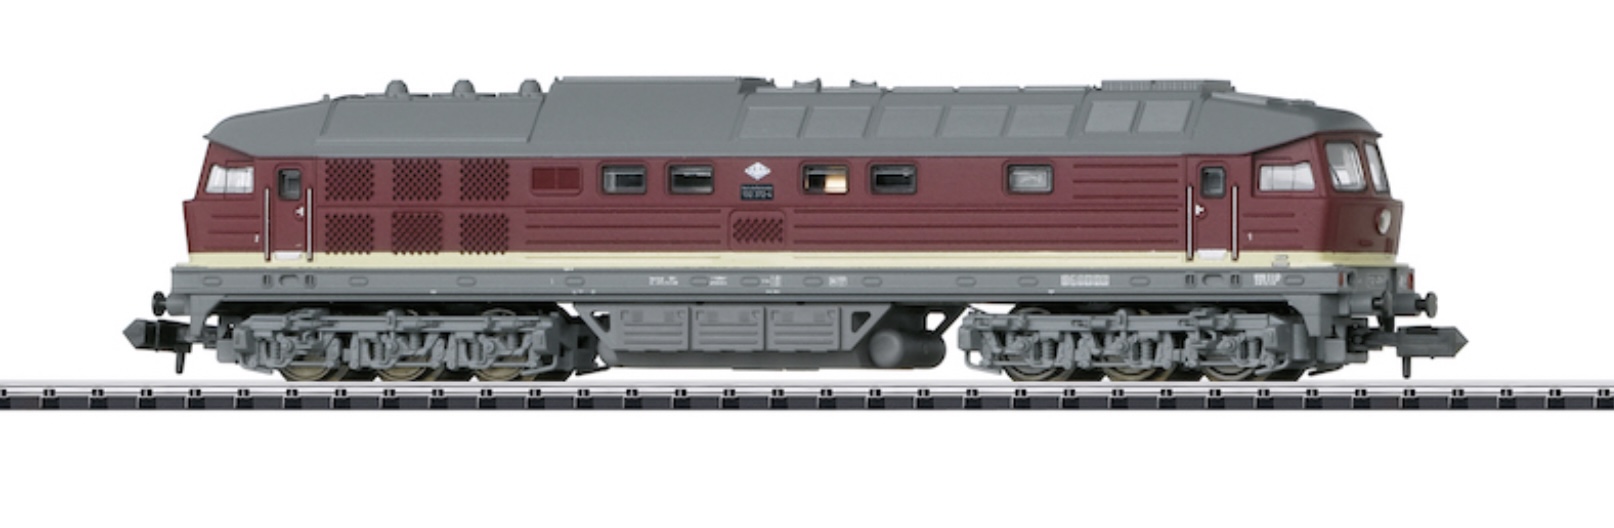 N Scale - Minitrix - 16234 - Locomotive, Diesel, Class 132, Epoch IV - Deutsche Reichsbahn - 132 372-4